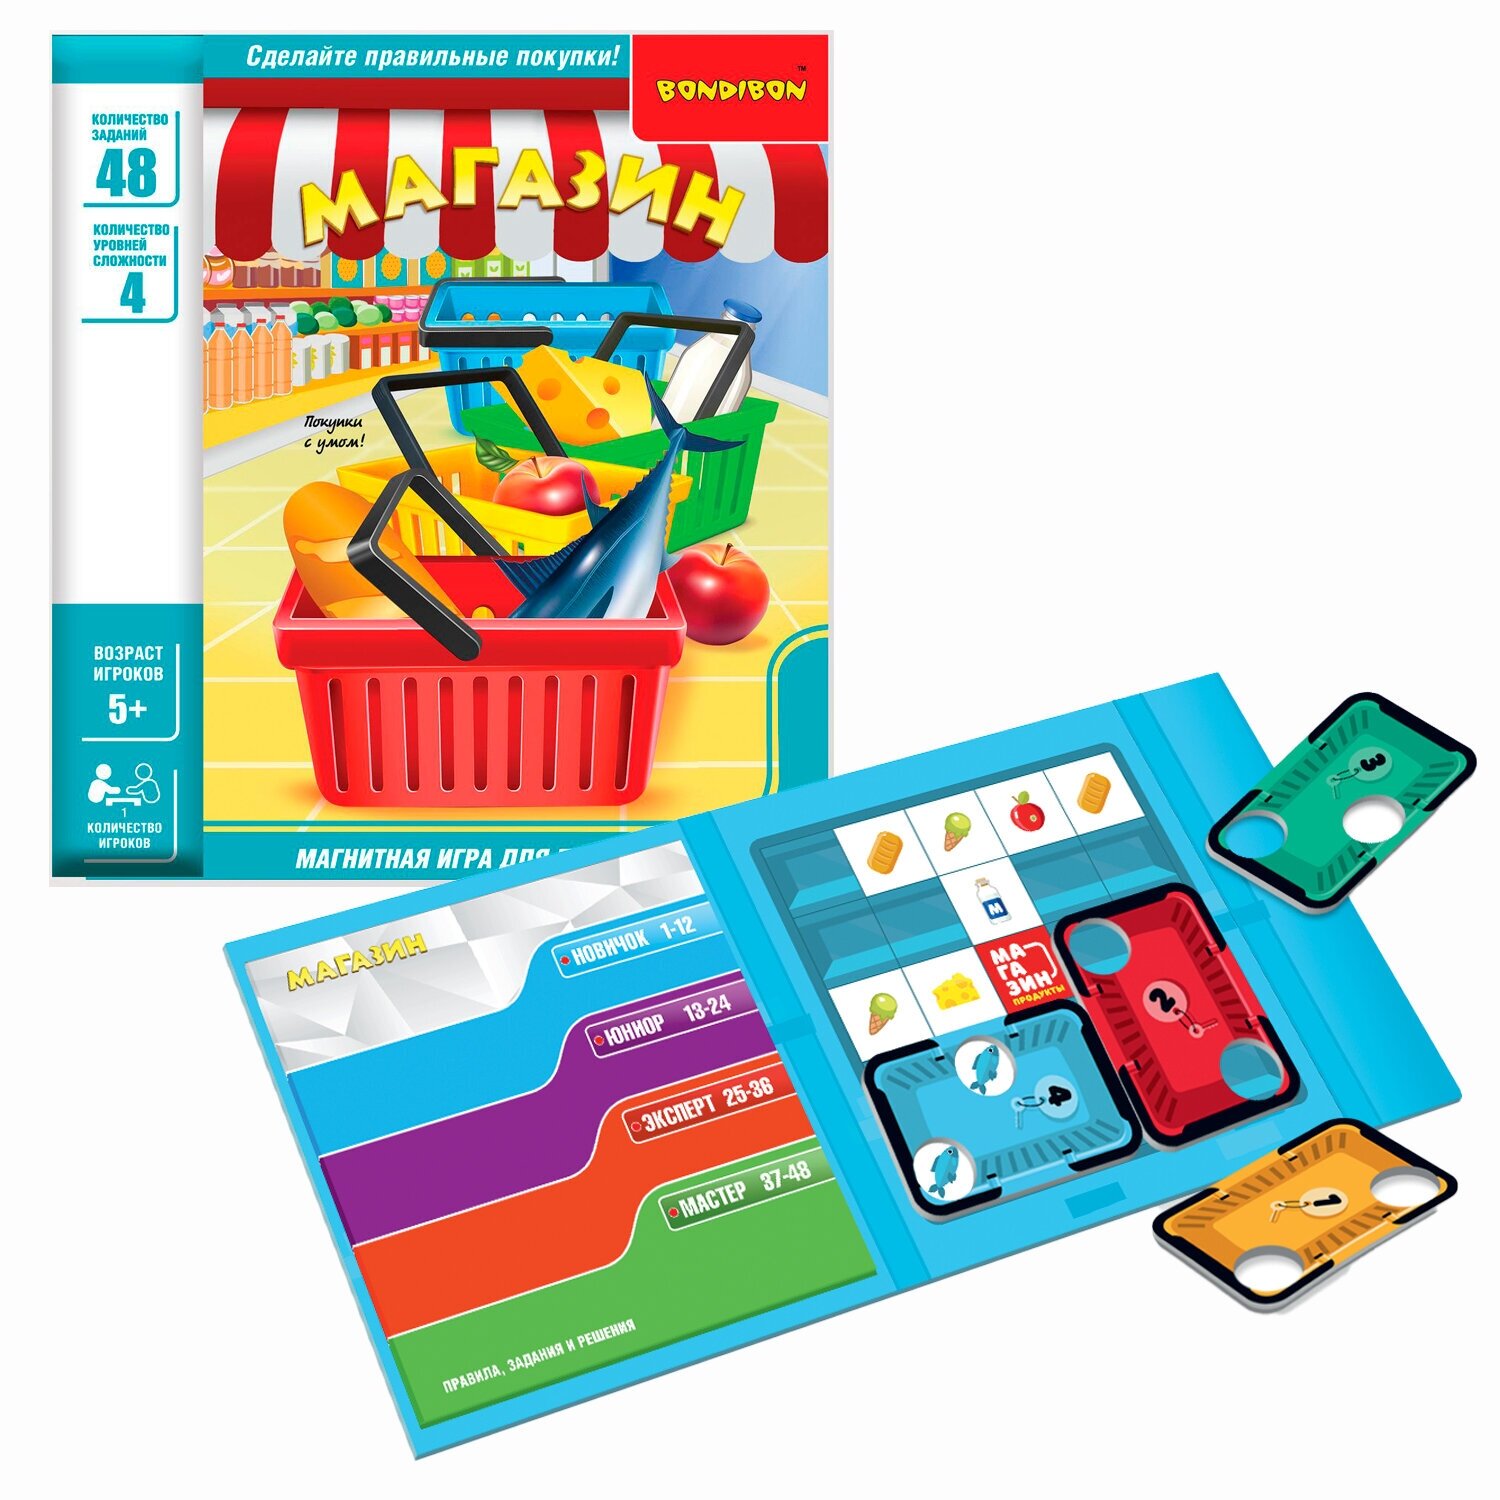 Магнитная игра для детей в дорогу магазин БондиЛогика Bondibon развивающая головоломка на магнитиках шоппинг в супермаркете